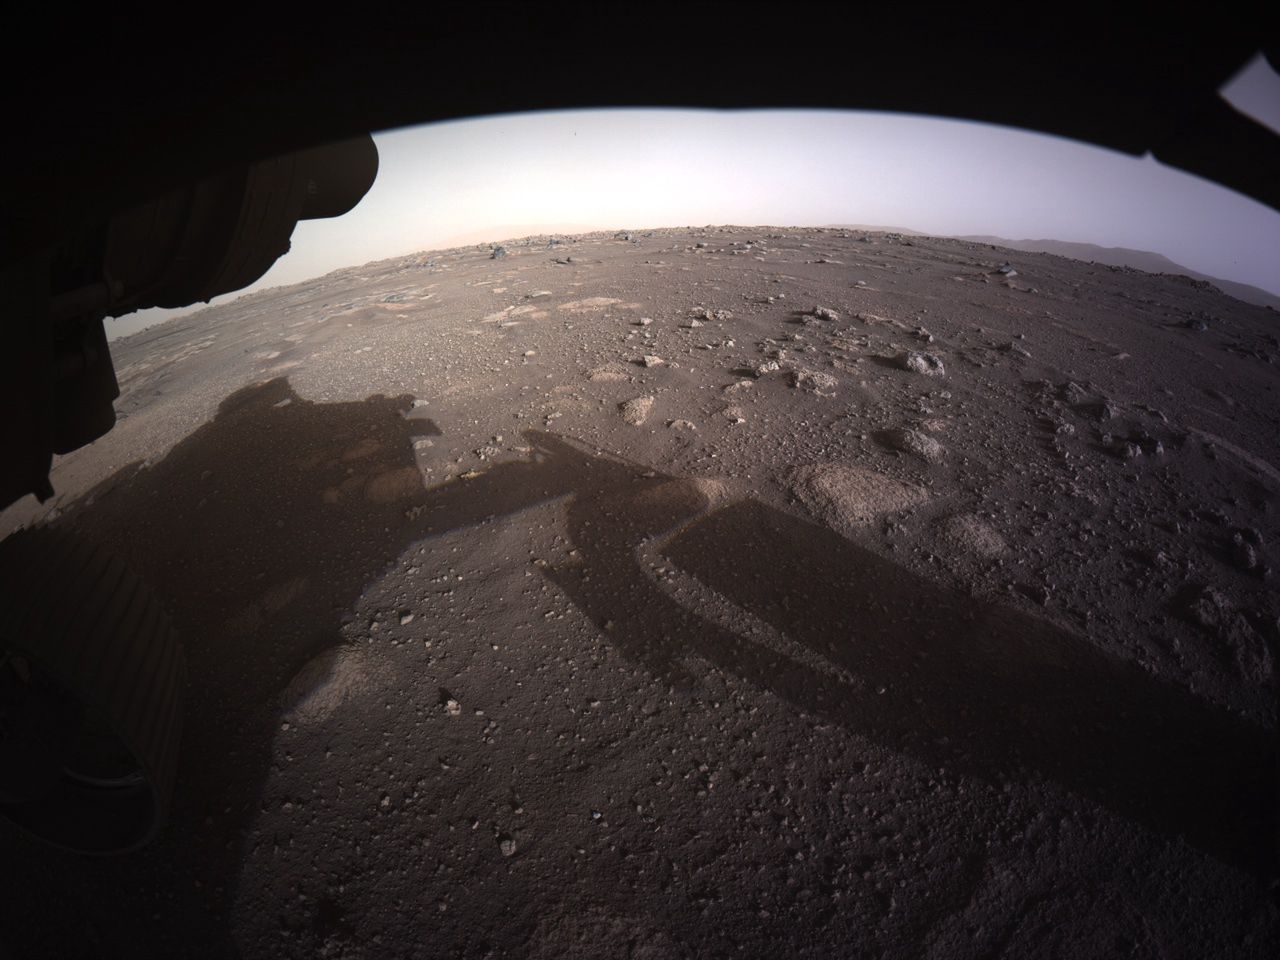 Łazik Perseverance przesłał nowe, wyraźne zdjęcia z Marsa